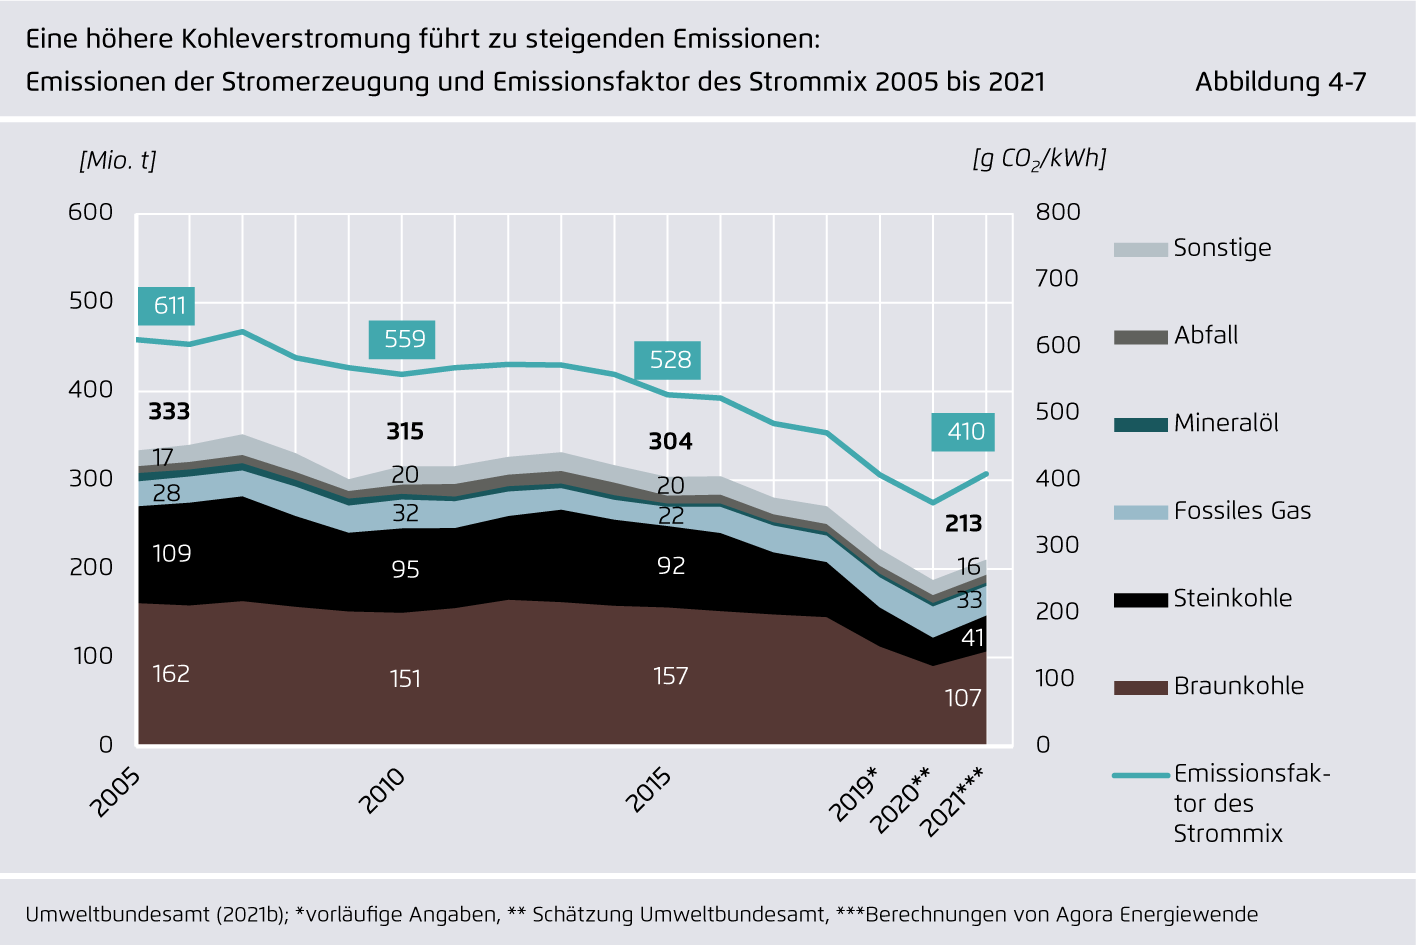 Preview for Eine höhere Kohleverstromung führt zu steigenden Emissionen: Emissionen der Stromerzeugung und Emissionsfaktor des Strommix 2005 bis 2021.